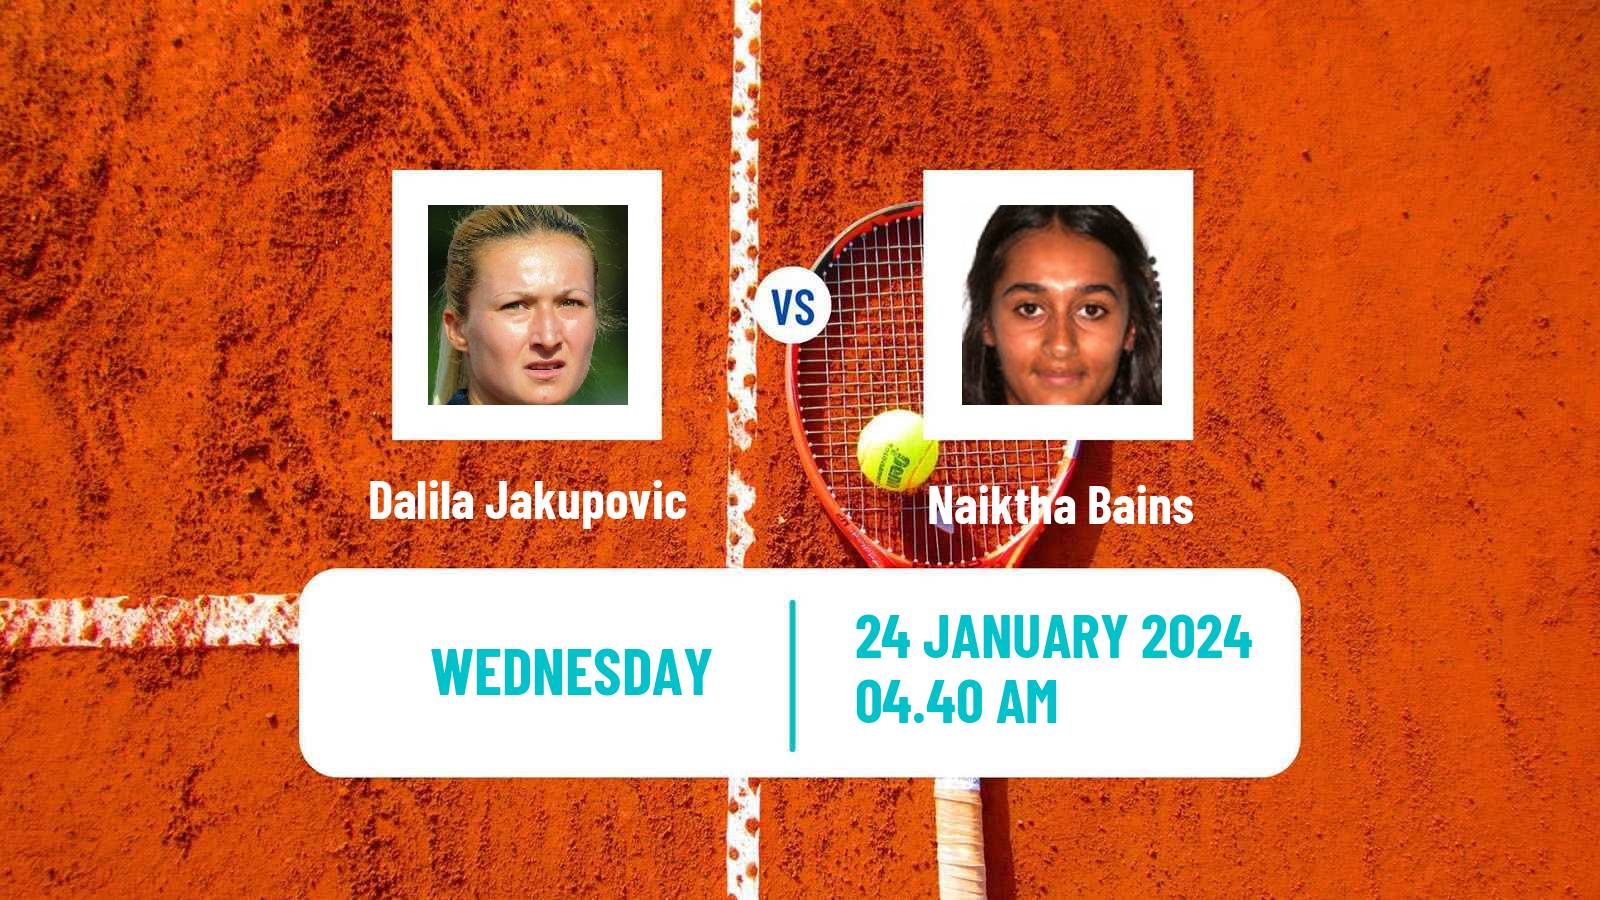 Tennis ITF W50 Pune Women Dalila Jakupovic - Naiktha Bains